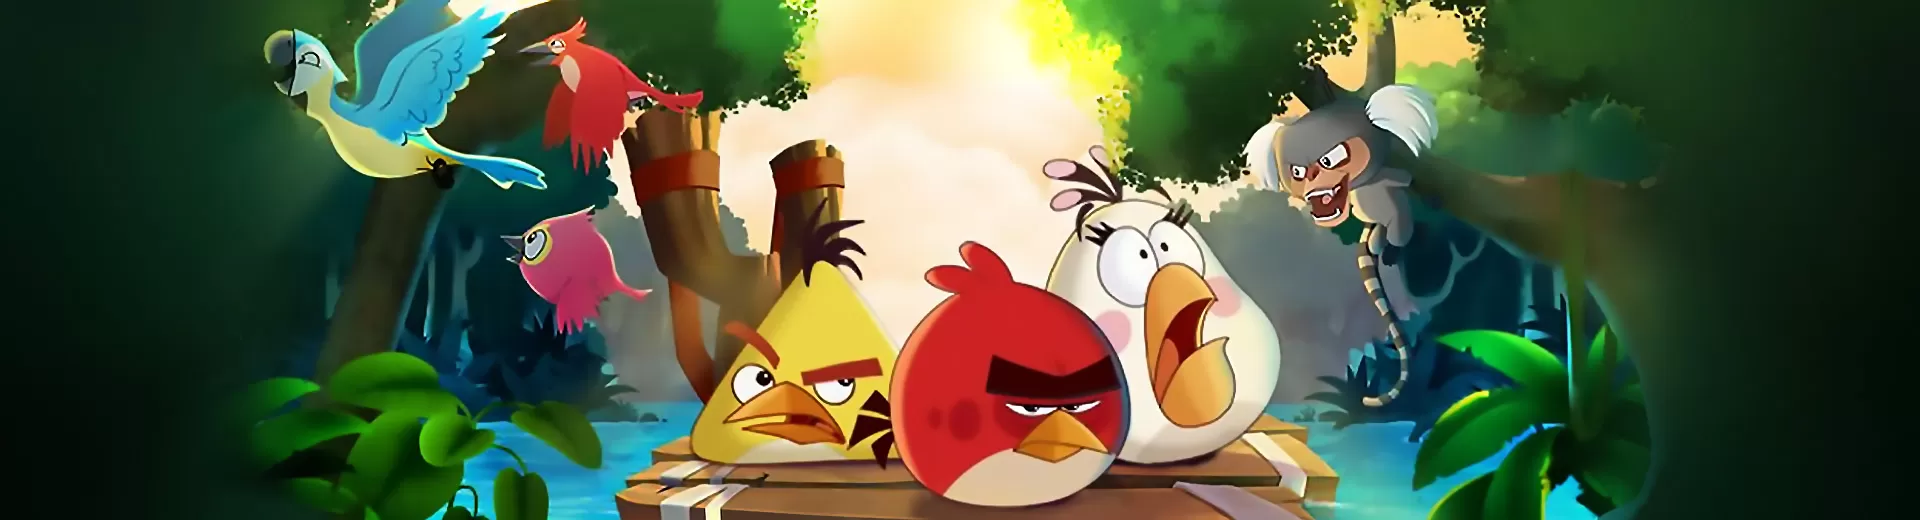 Angry Birds Rio Emulator Pc